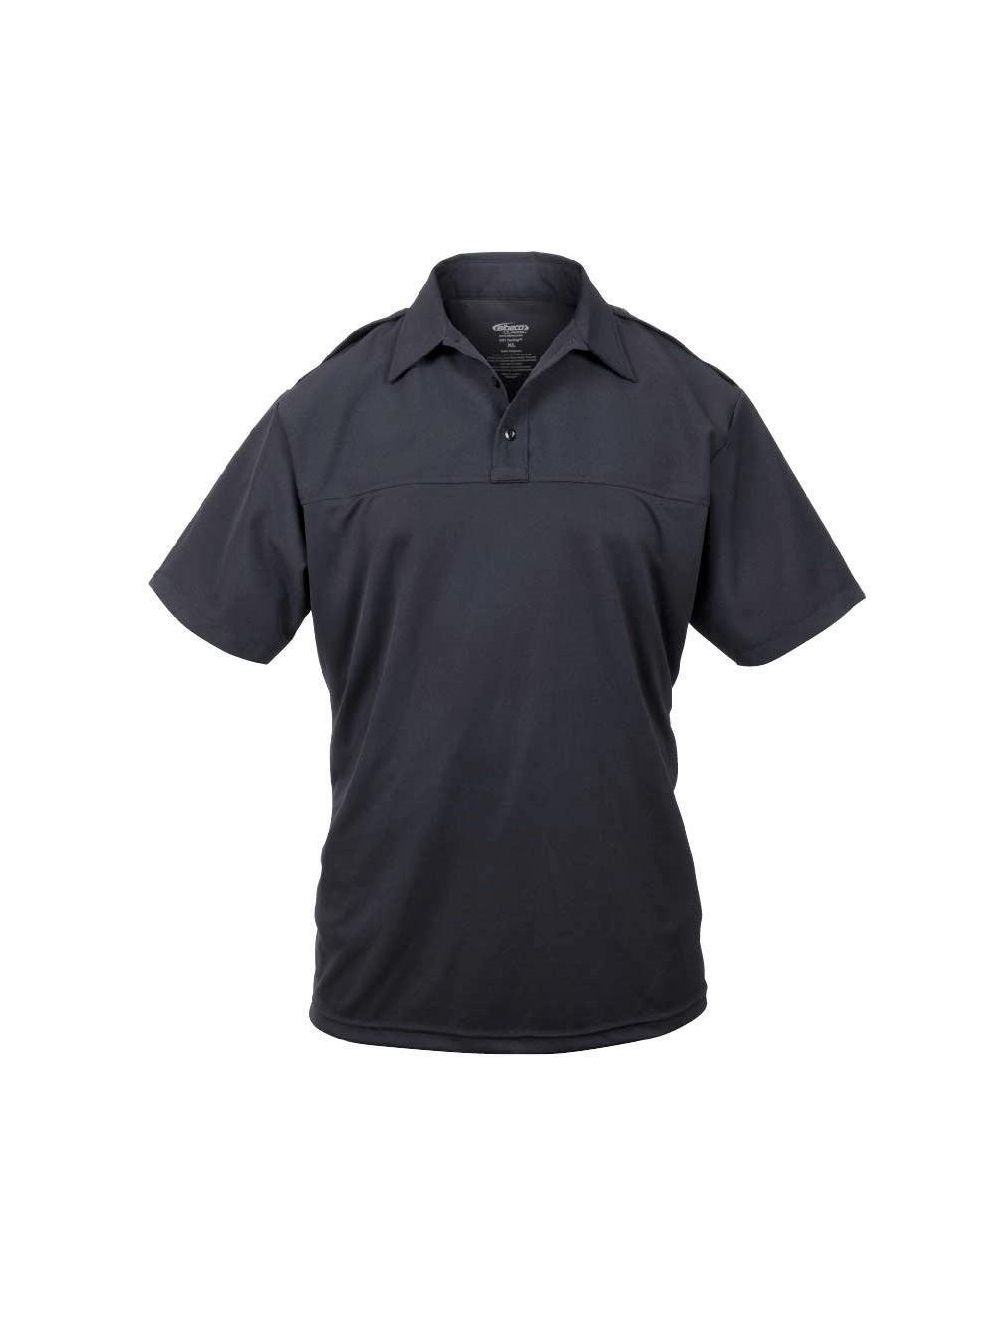 UV1 CX360 Undervest Short Sleeve Shirt-Mens-Midnight Navy